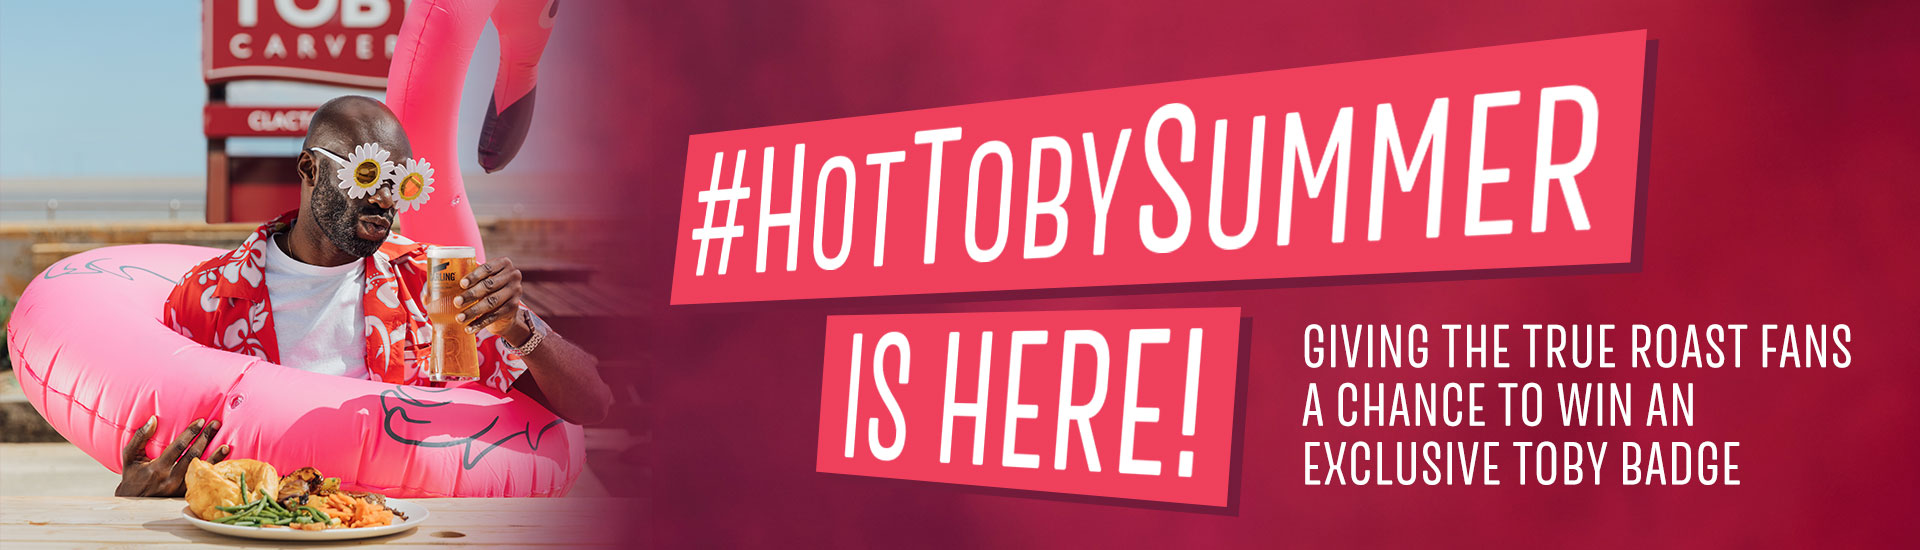 Hot Toby Summer